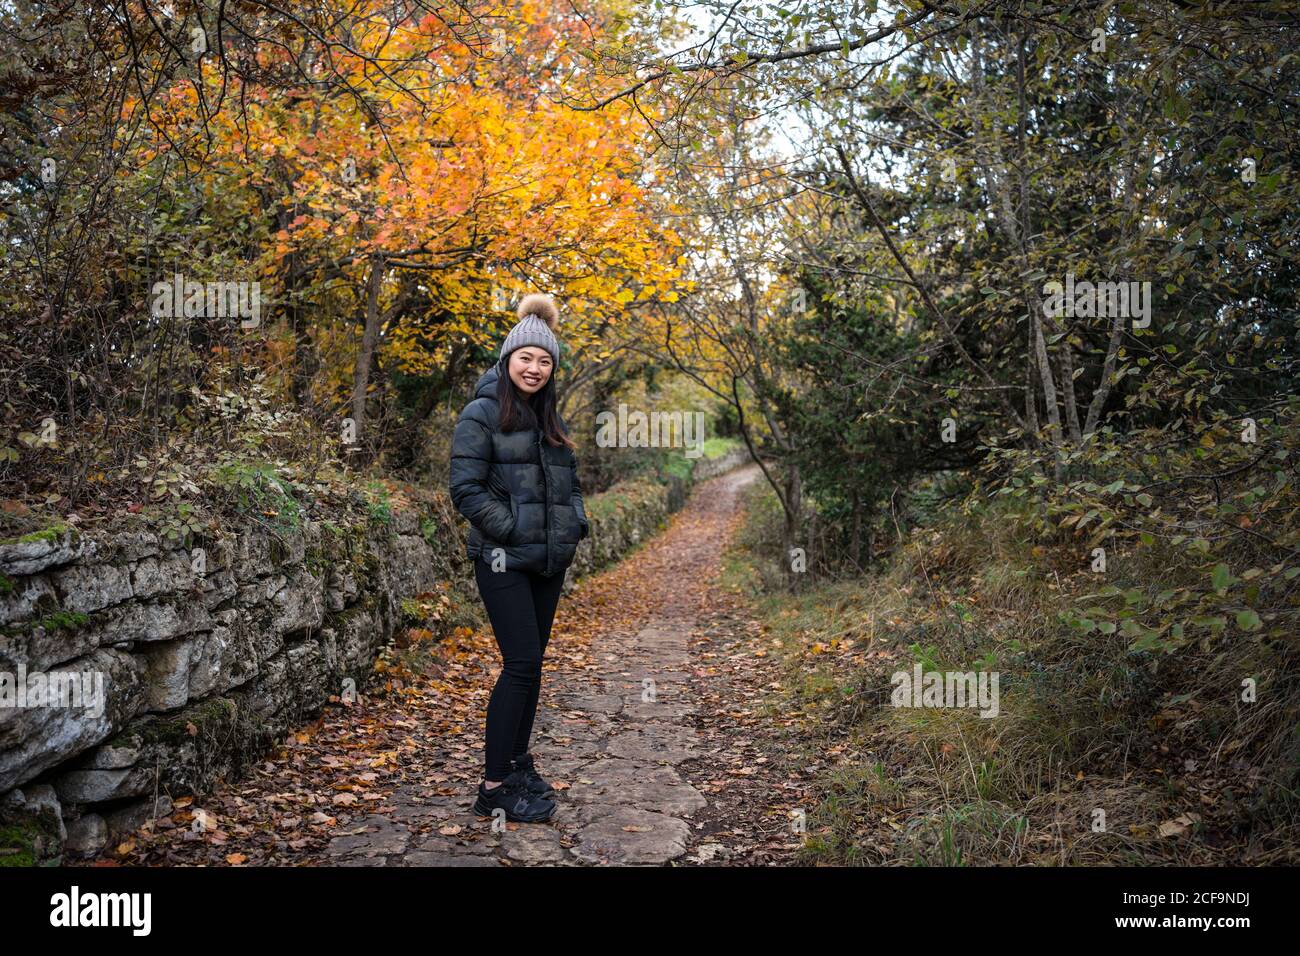 Junge charmante asiatische Frau in schwarzer warmer Jacke und Strickmütze mit Bommel lächelnd und Blick auf die Kamera auf dem Weg in den Garten mit Herbstgängern in San Marino, Italien Stockfoto